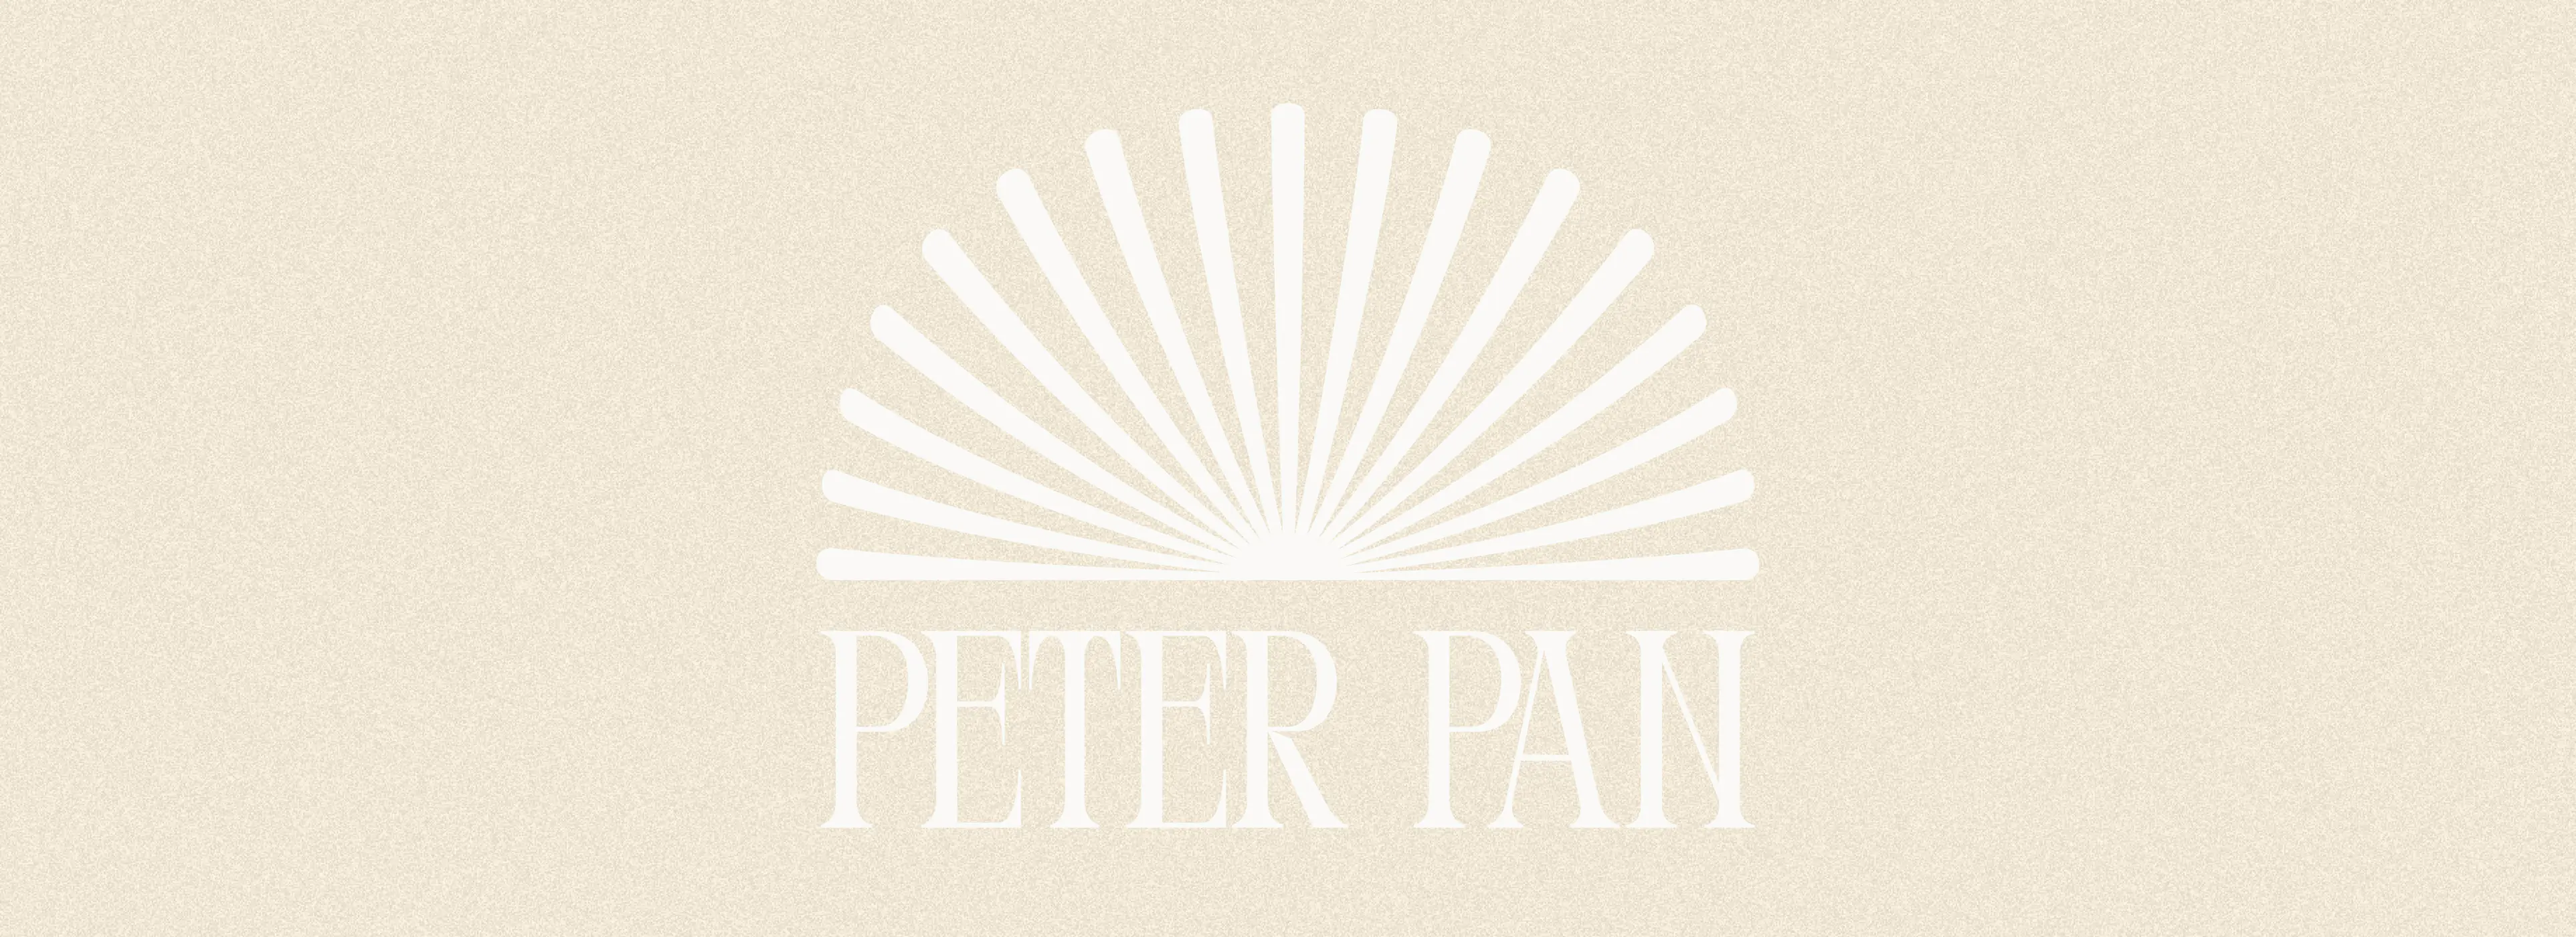 Rebranding Peter Pan, il progetto di tesi in Digital Communication Design di Andrea Ricciardi